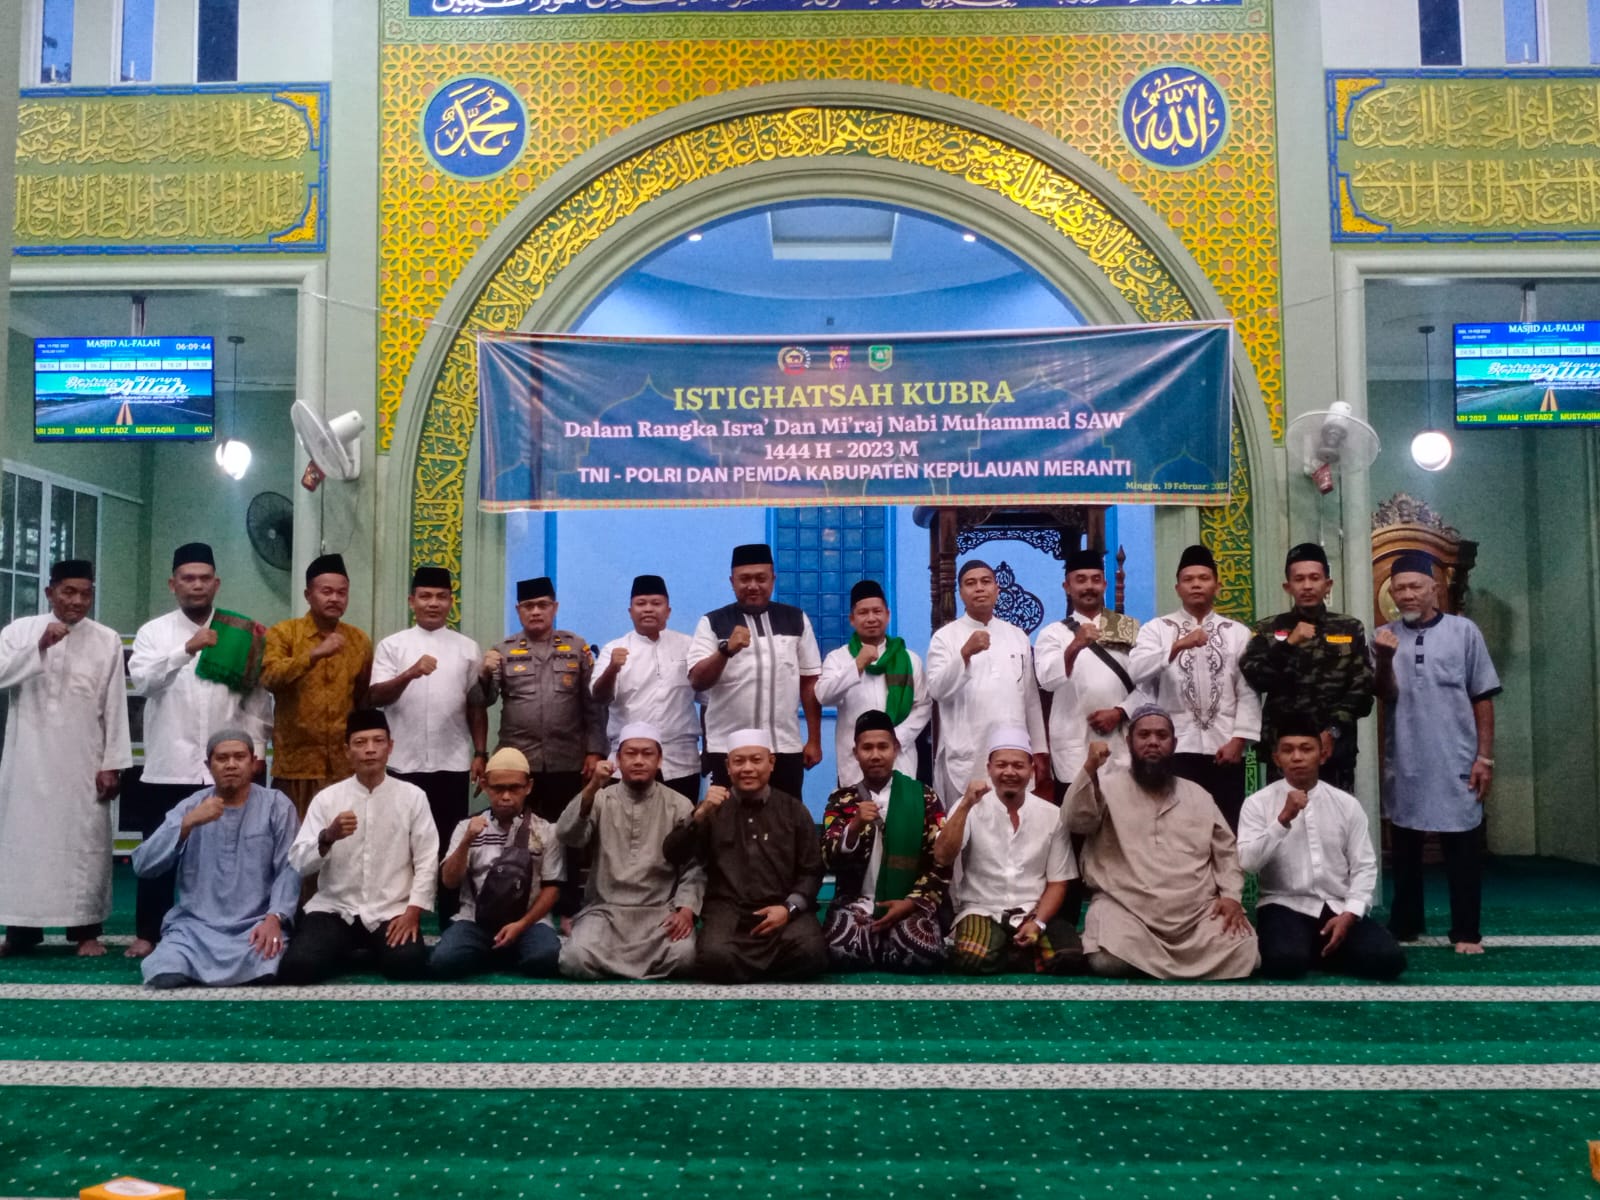 TNI, POLRI dan Pemda Kabupaten Kepulauan Meranti Melaksanakan Istighotsah Kubro Di Masjid Al-Fallah Selatpanjang